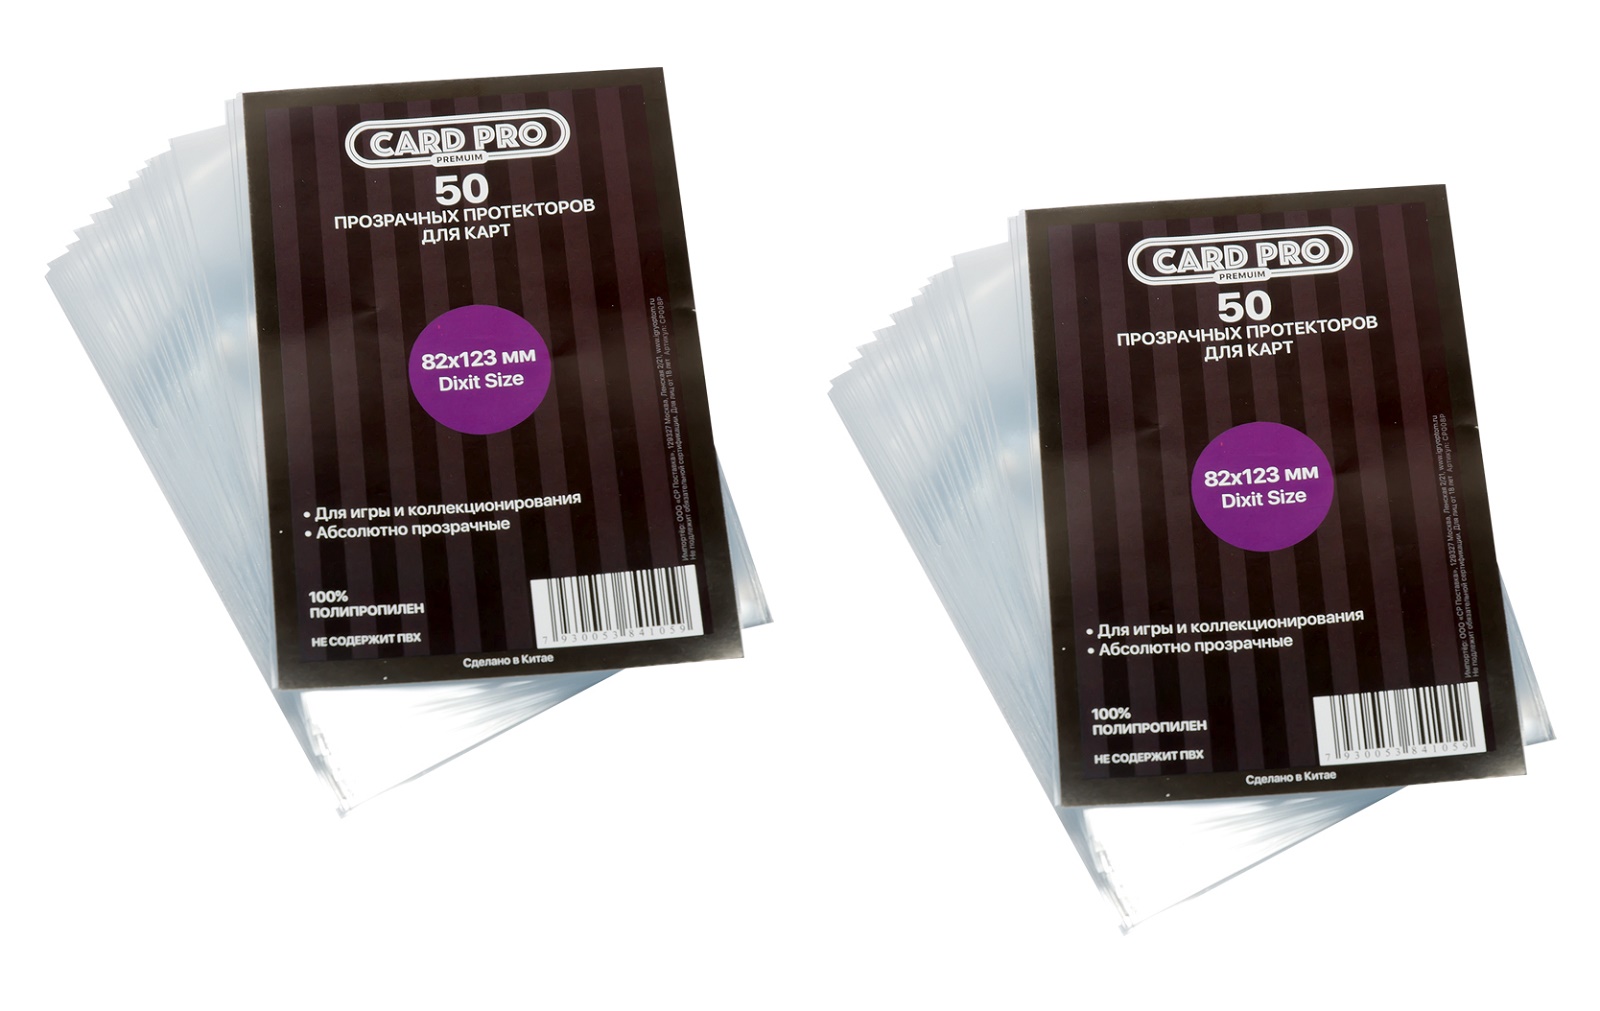 Протекторы Card-Pro PREMIUM Dixit Size для настольных игр 82x123 мм. 2 пачки прозрачные протекторы card pro premium catan size 46x70 мм 5 пачек по 50 шт